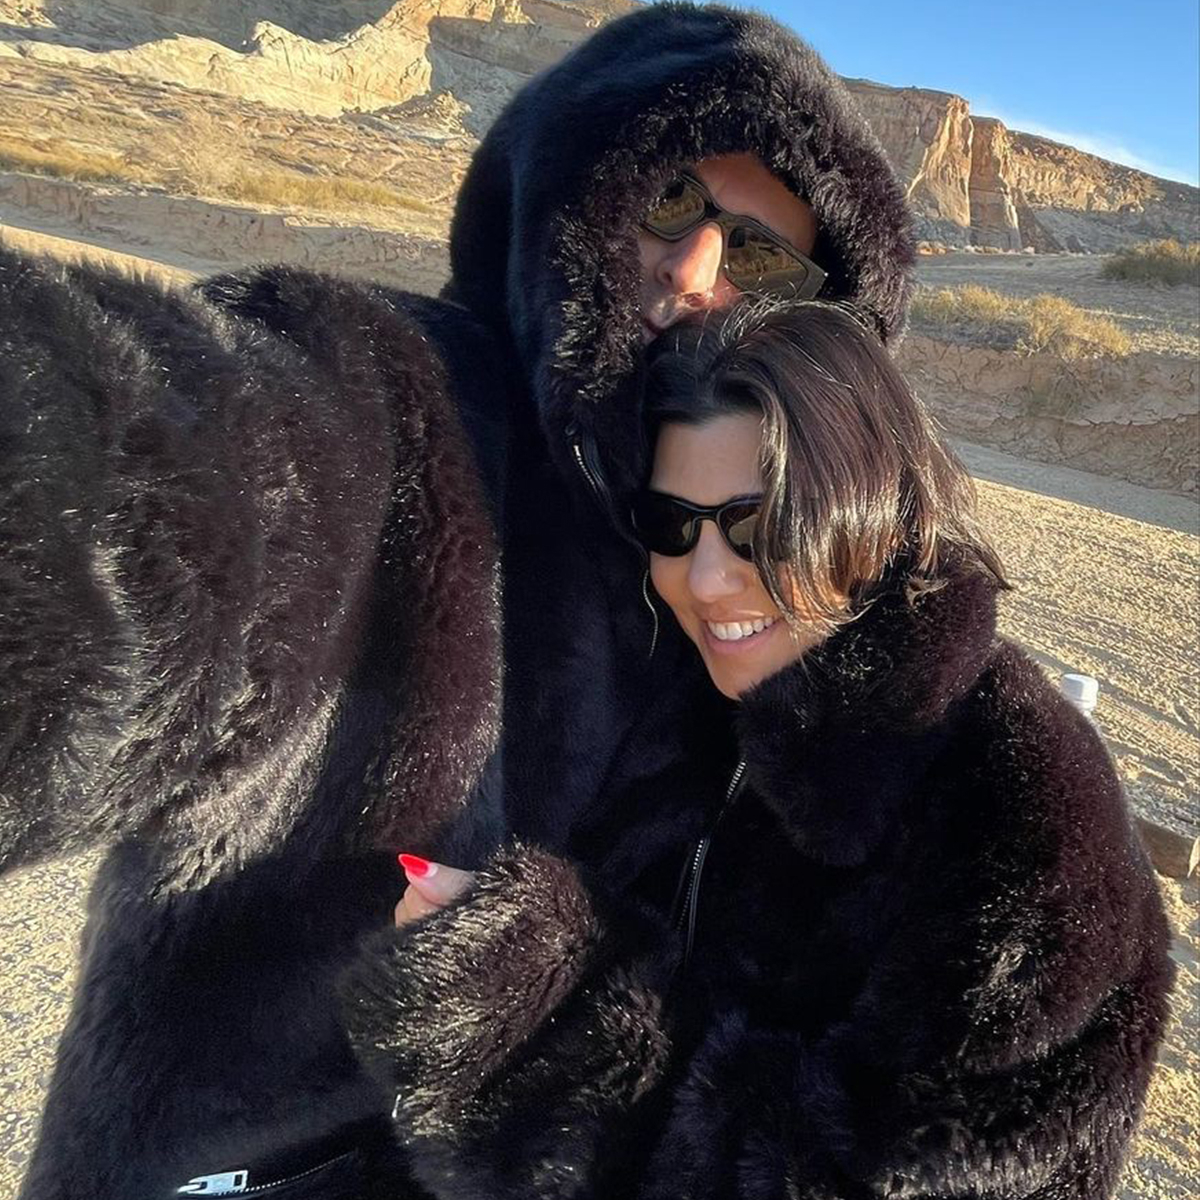 Kourtney Kardashian and Travis Barker Get Cozy on Snowy Valentine’s Day Trip – E! Online